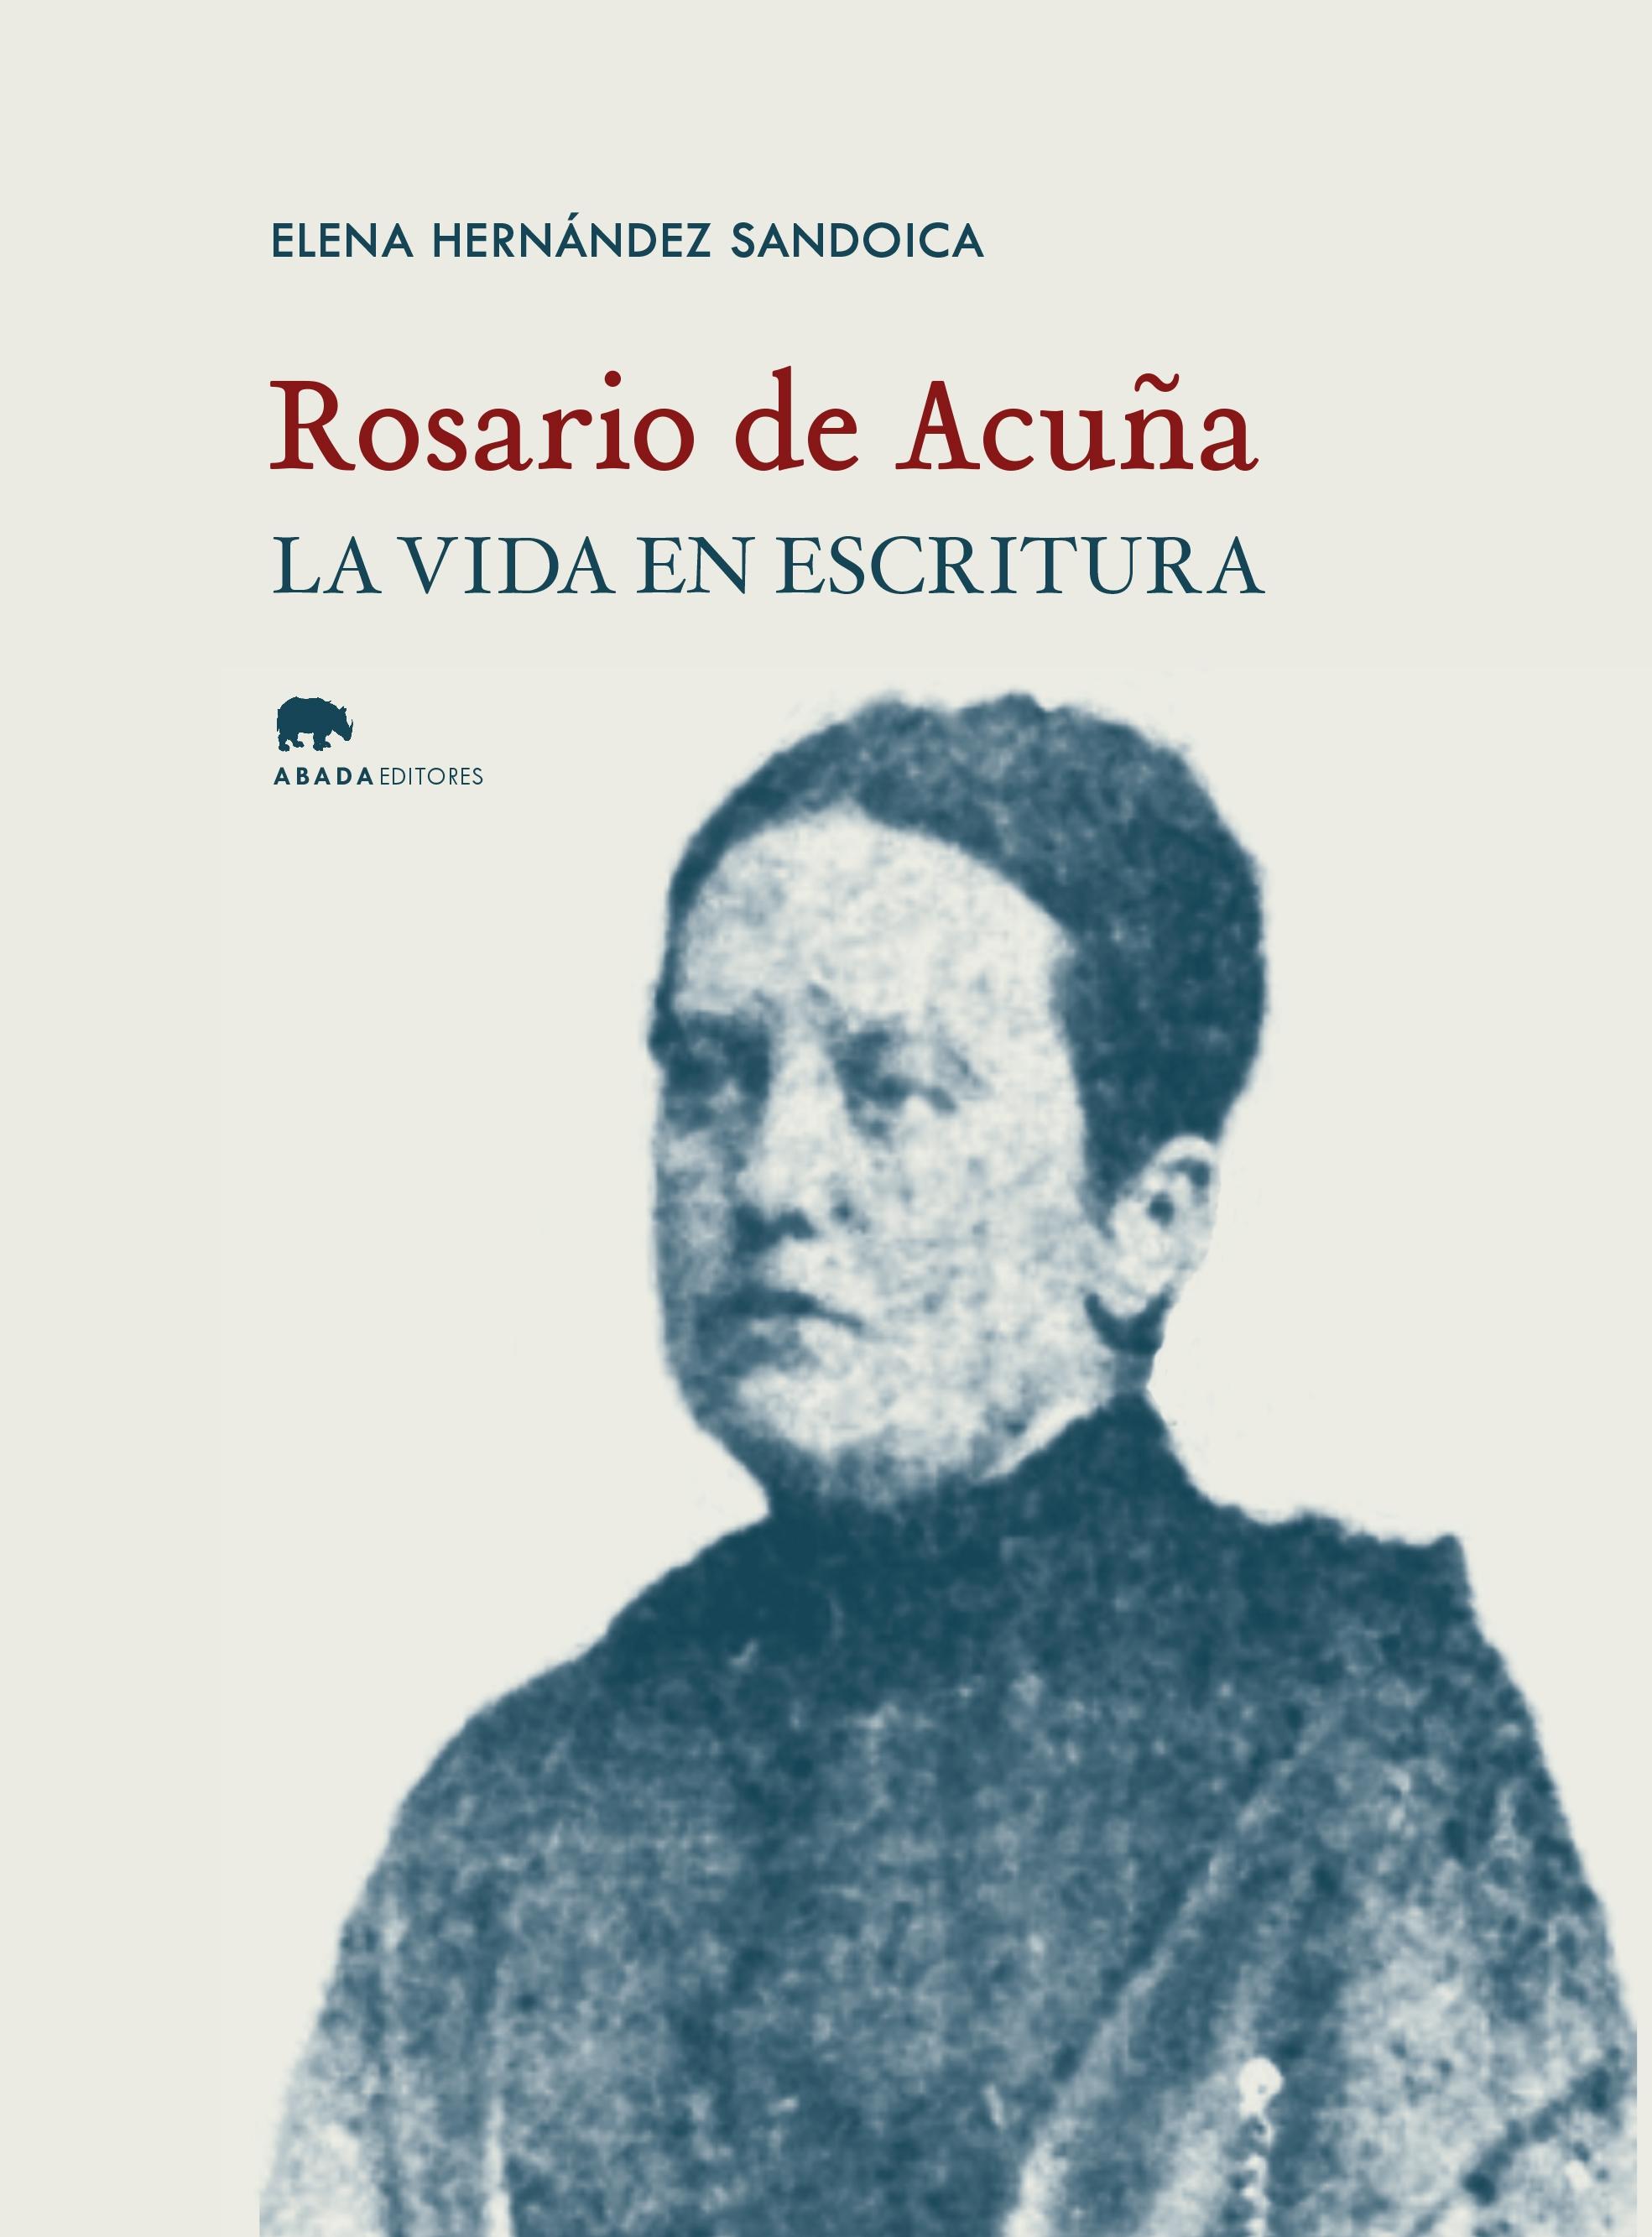 Rosario de Acuña "La Vida en Escritura". 